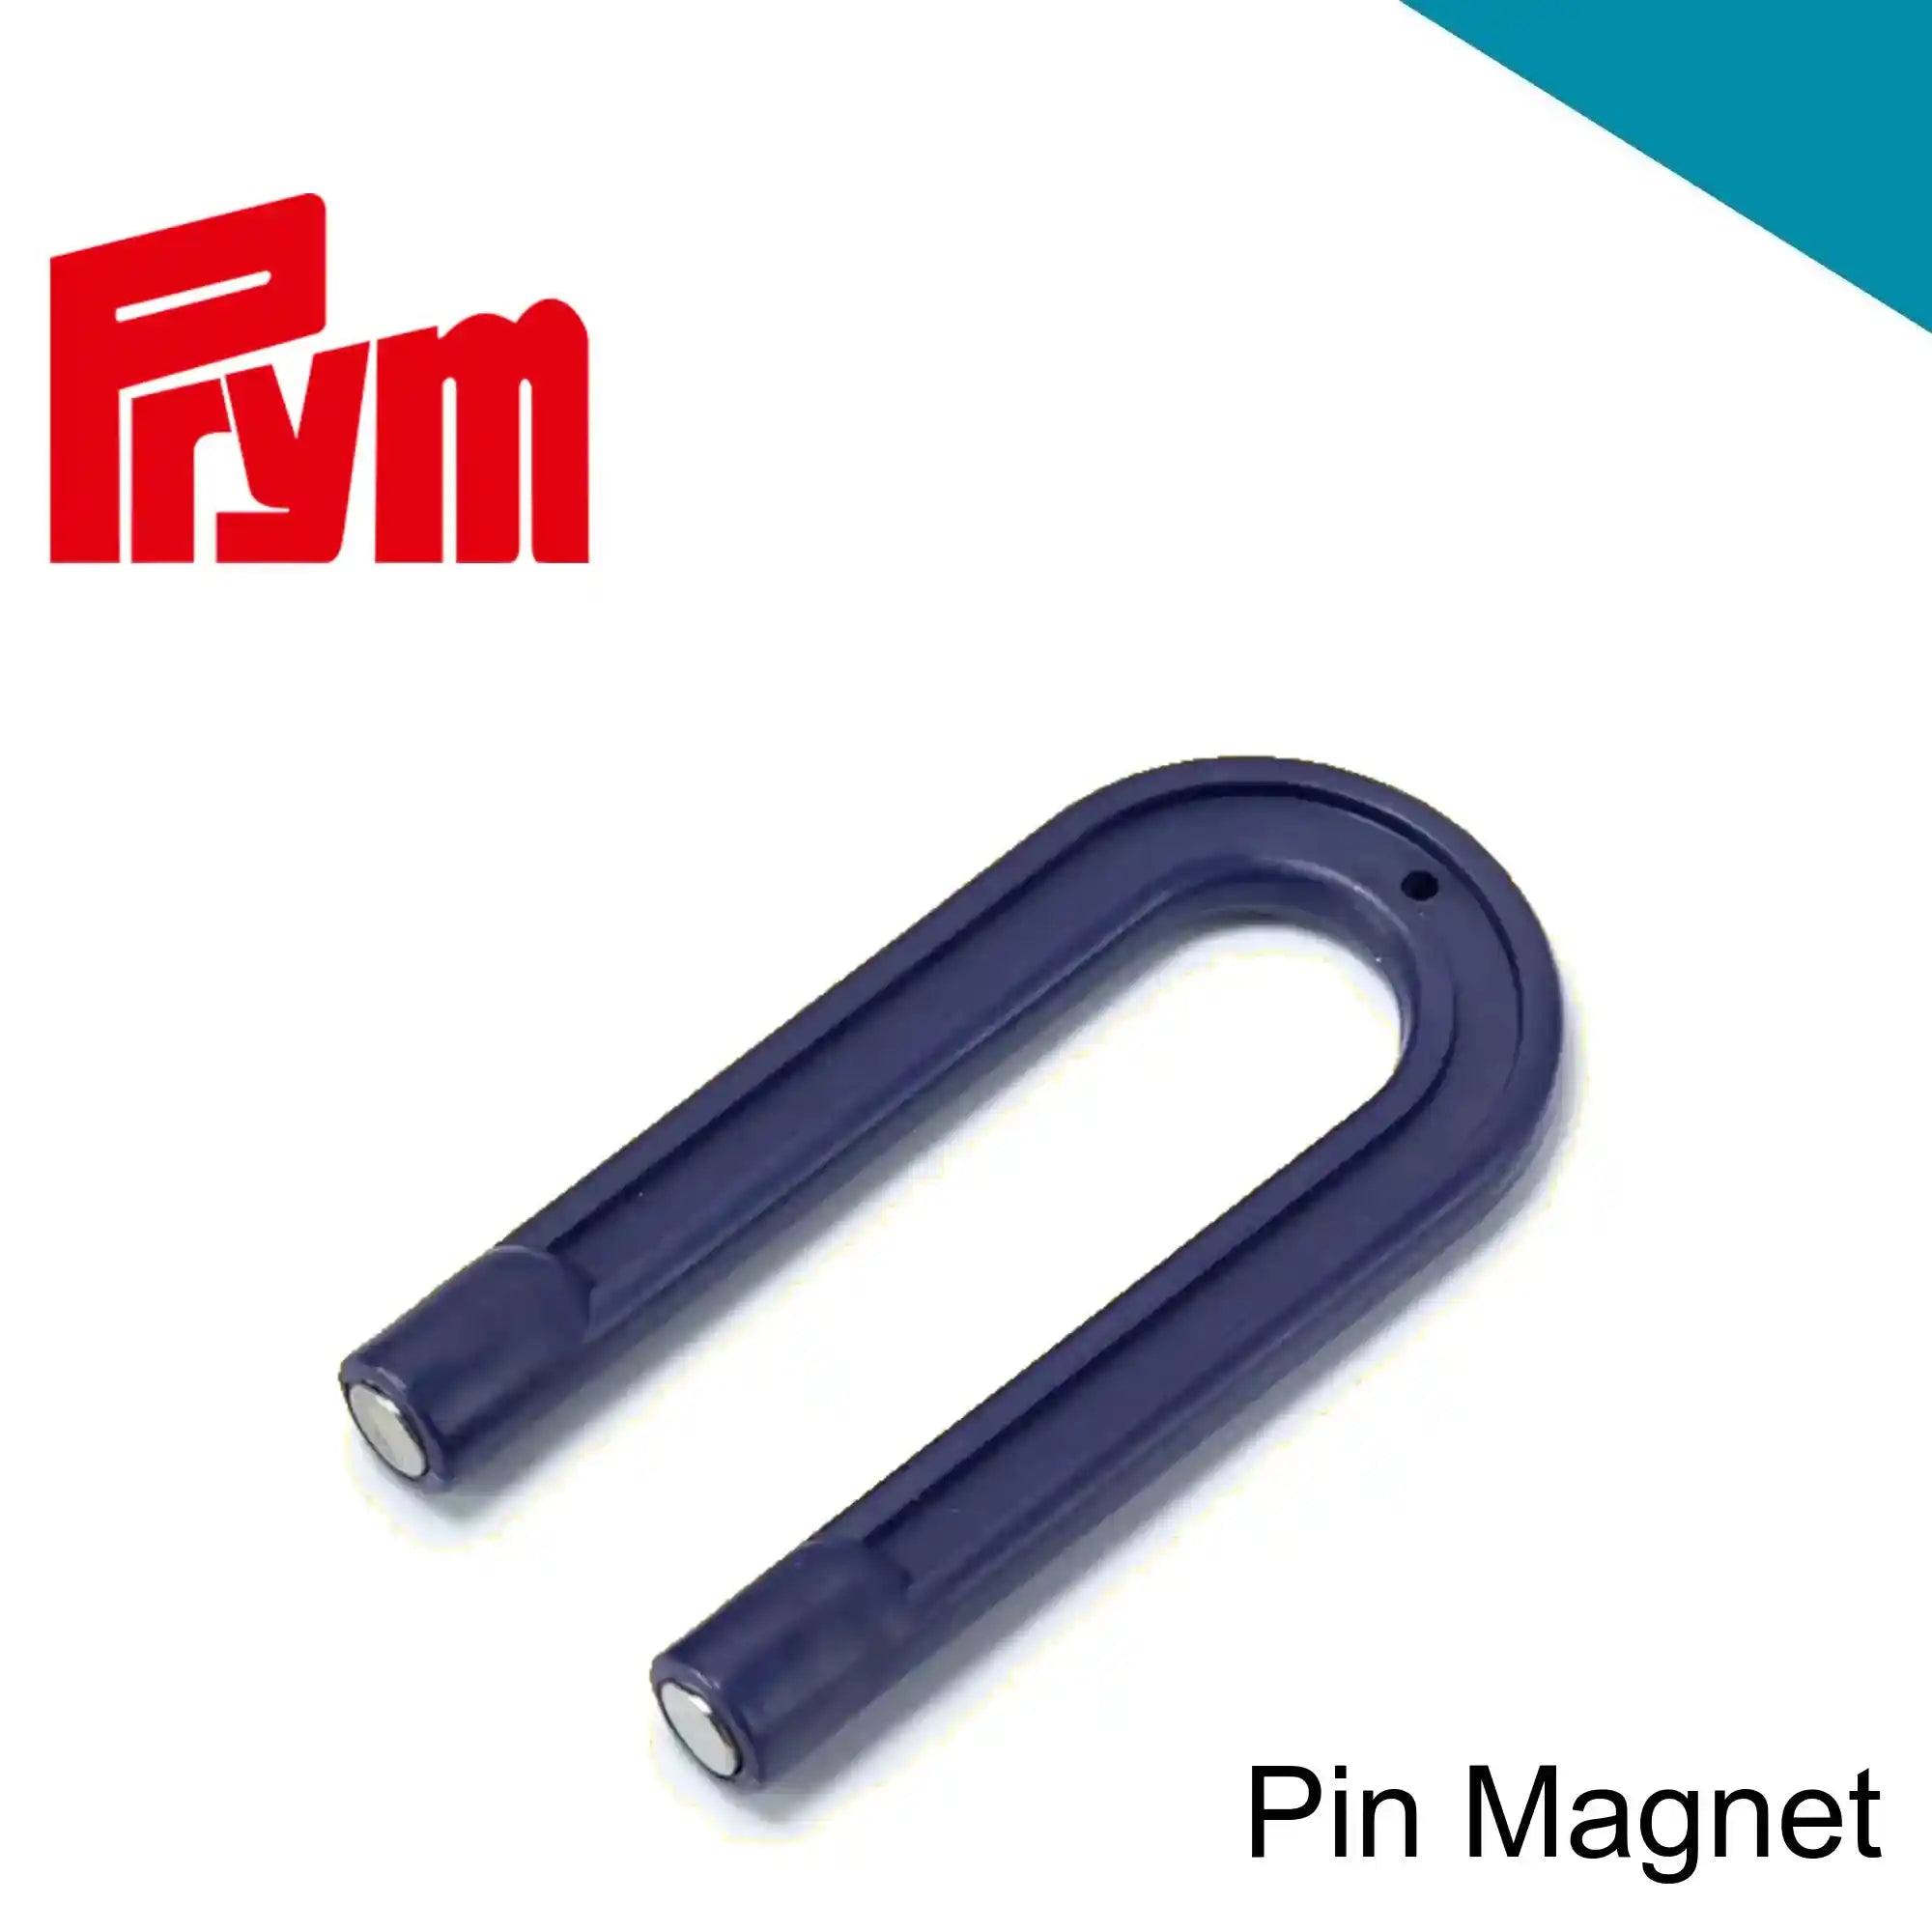 Prym Horseshoe Magnet